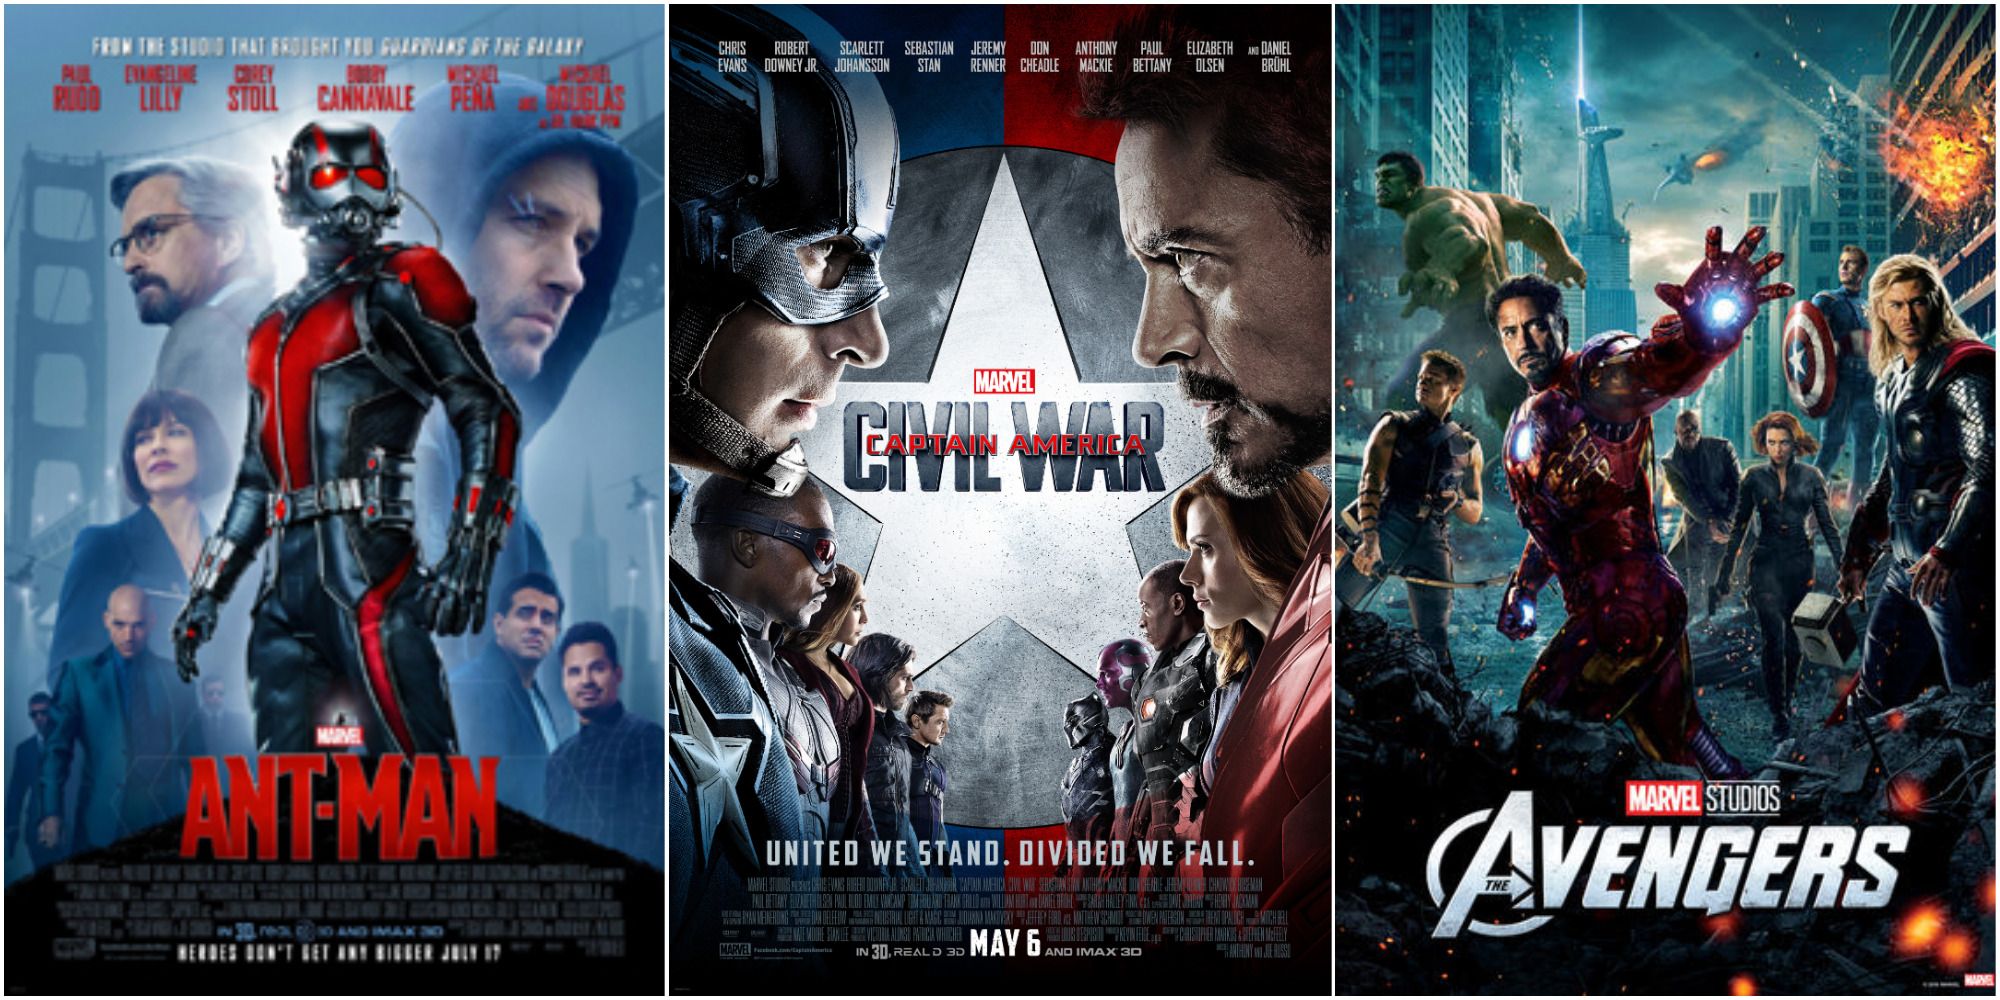 Ant-Man, Captain America: Civil War, Avengers